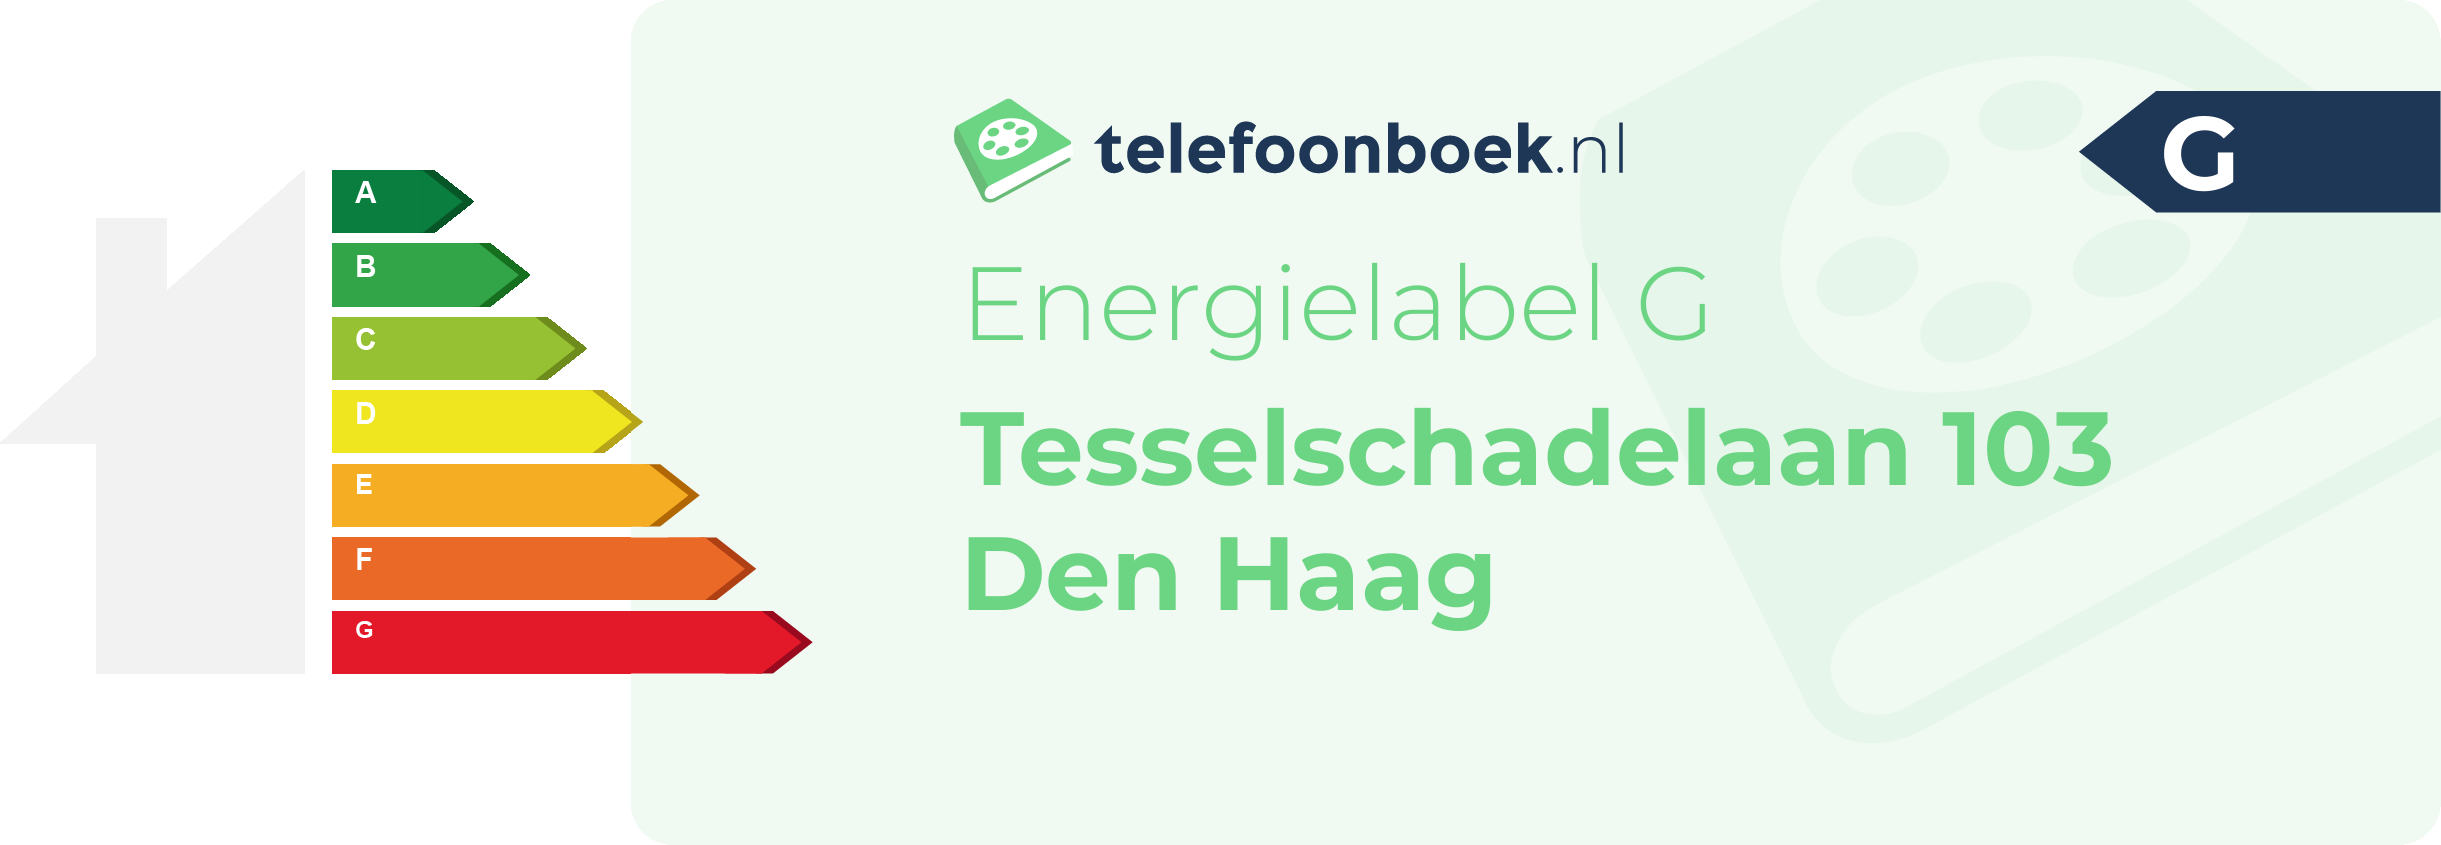 Energielabel Tesselschadelaan 103 Den Haag